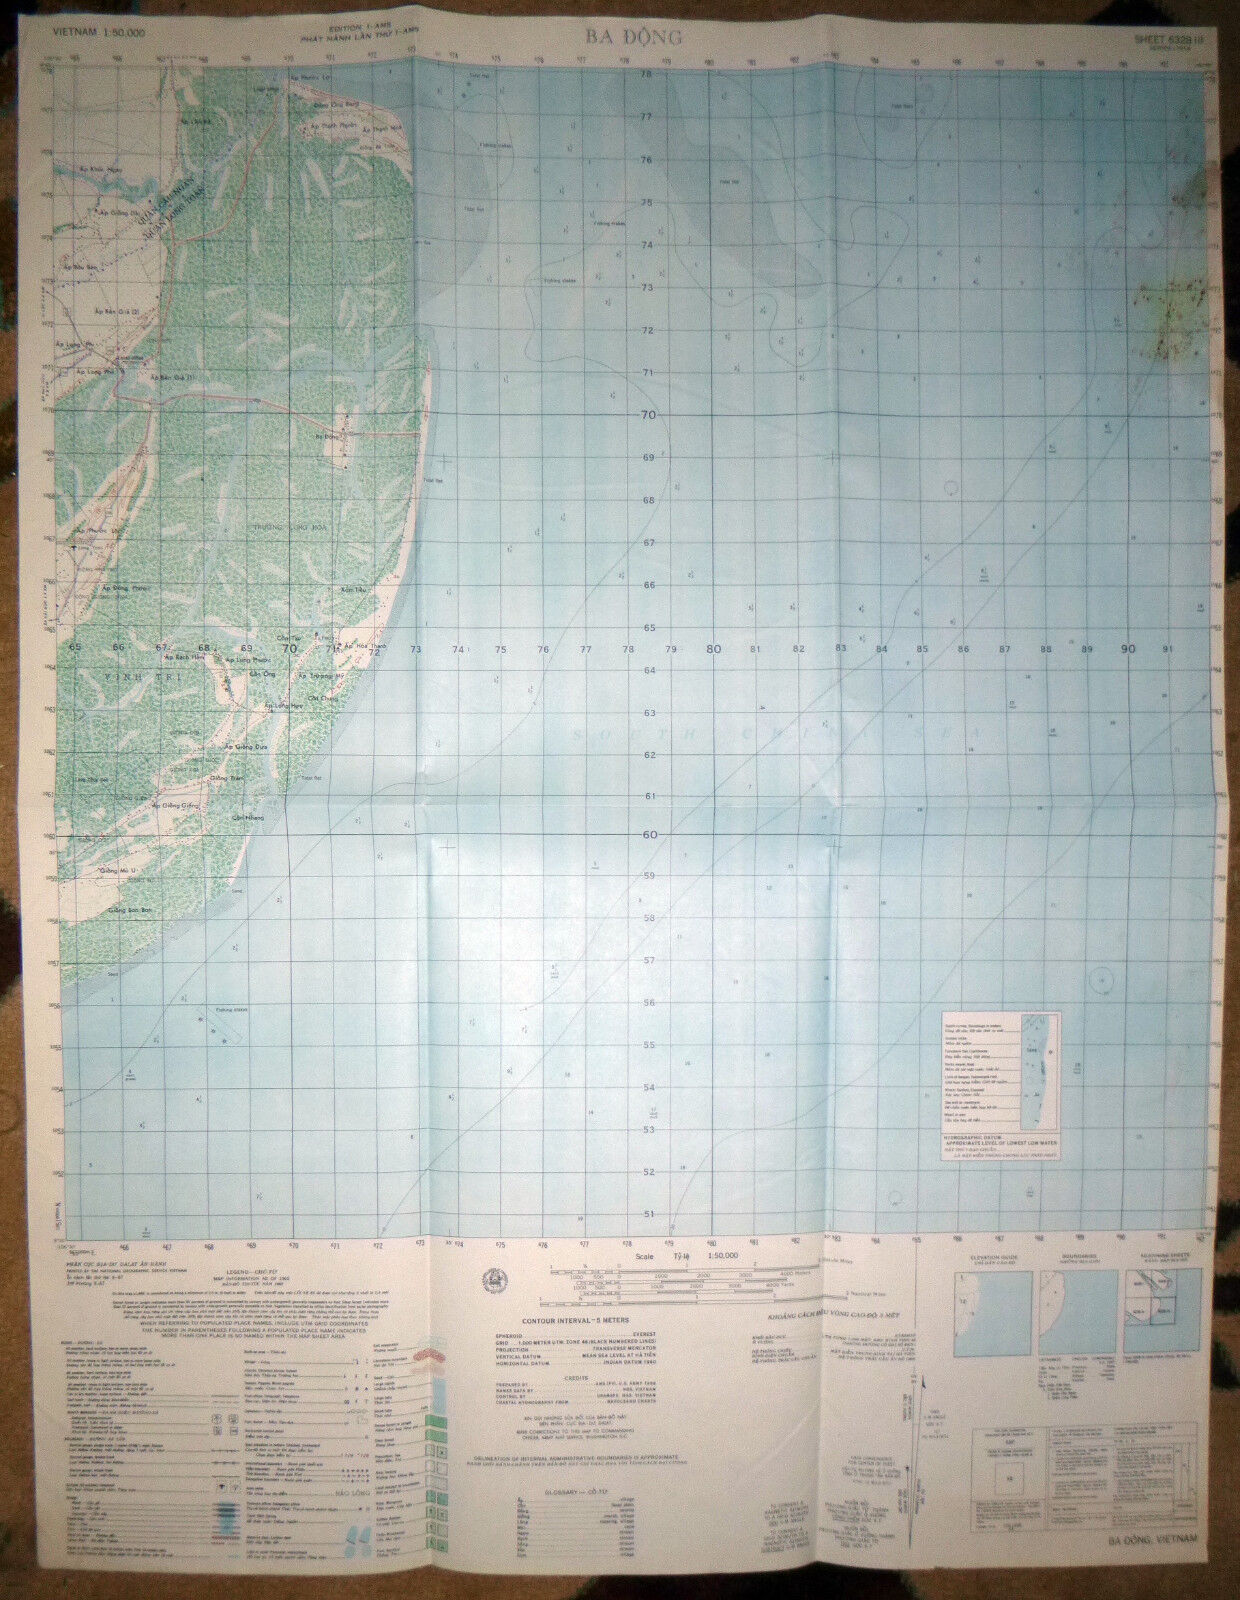 6328 iii - SOUTH CHINA SEA - 1966 MAP - BA DONG - MACV-SOG - Vietnam War